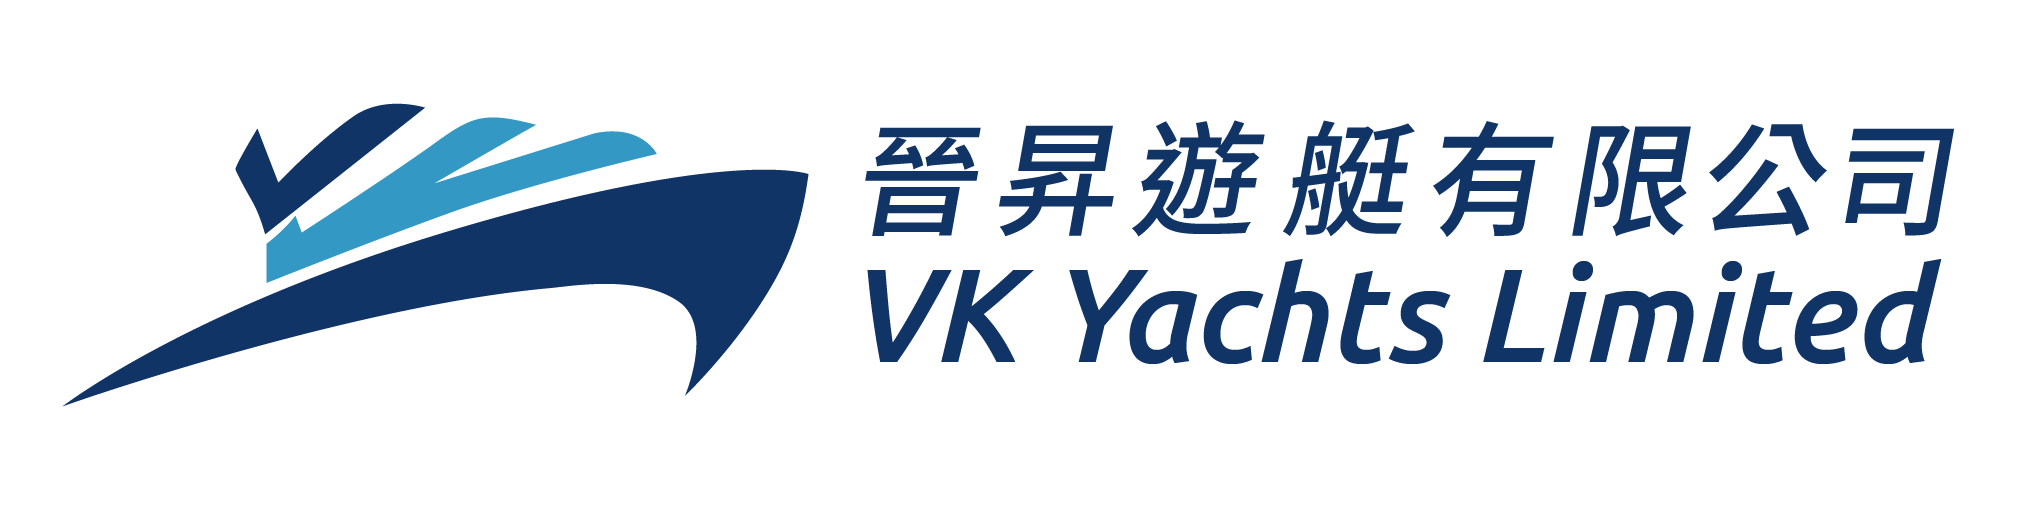 VK Yachts logo